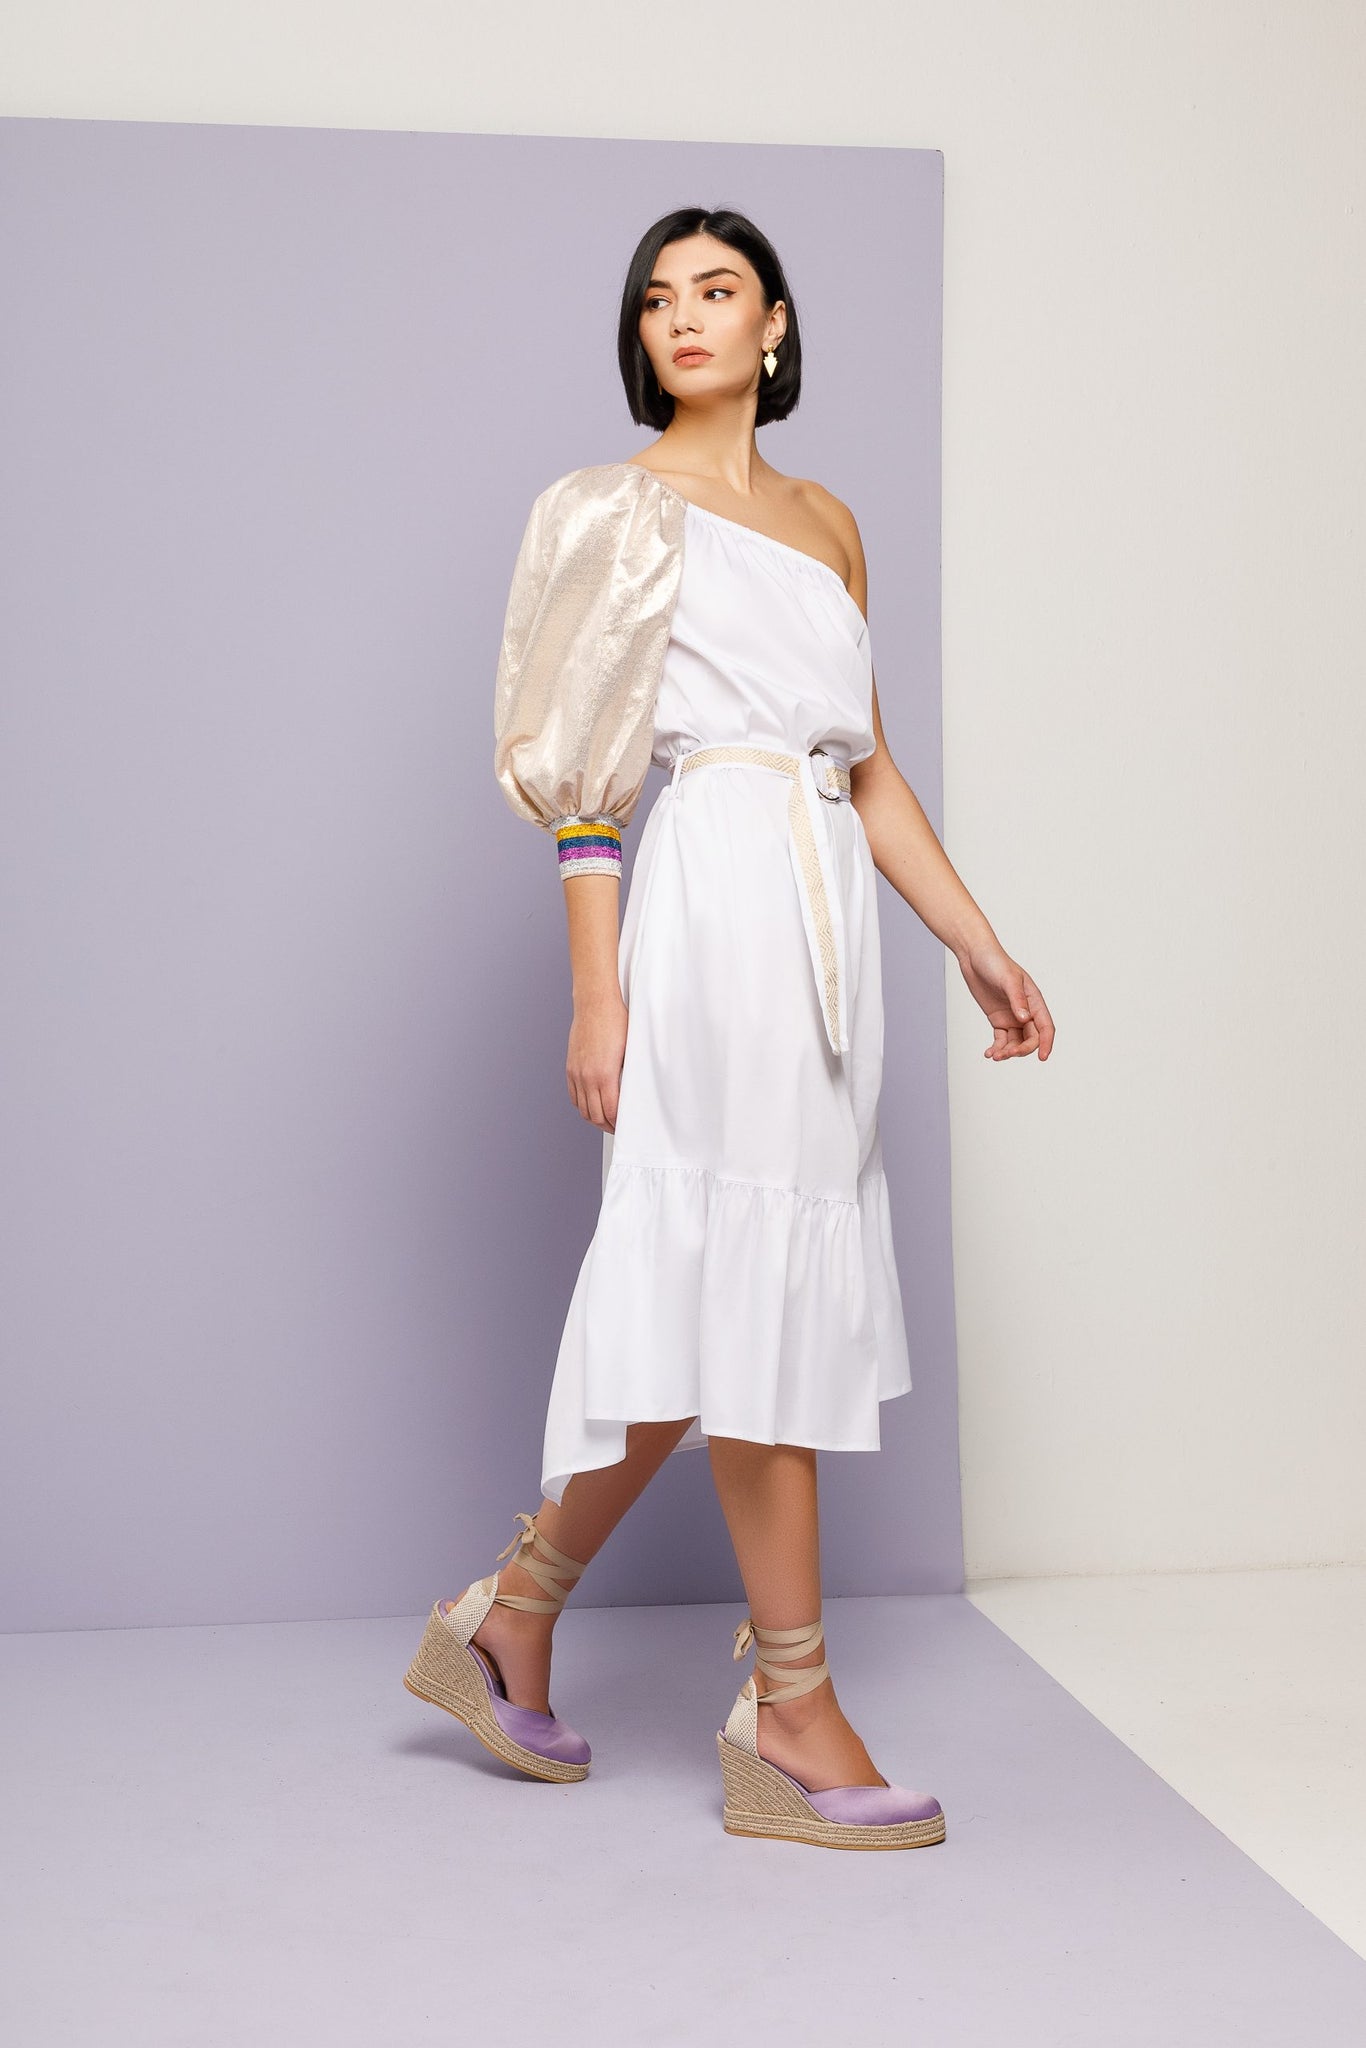 Gold Sleeved Dress – White